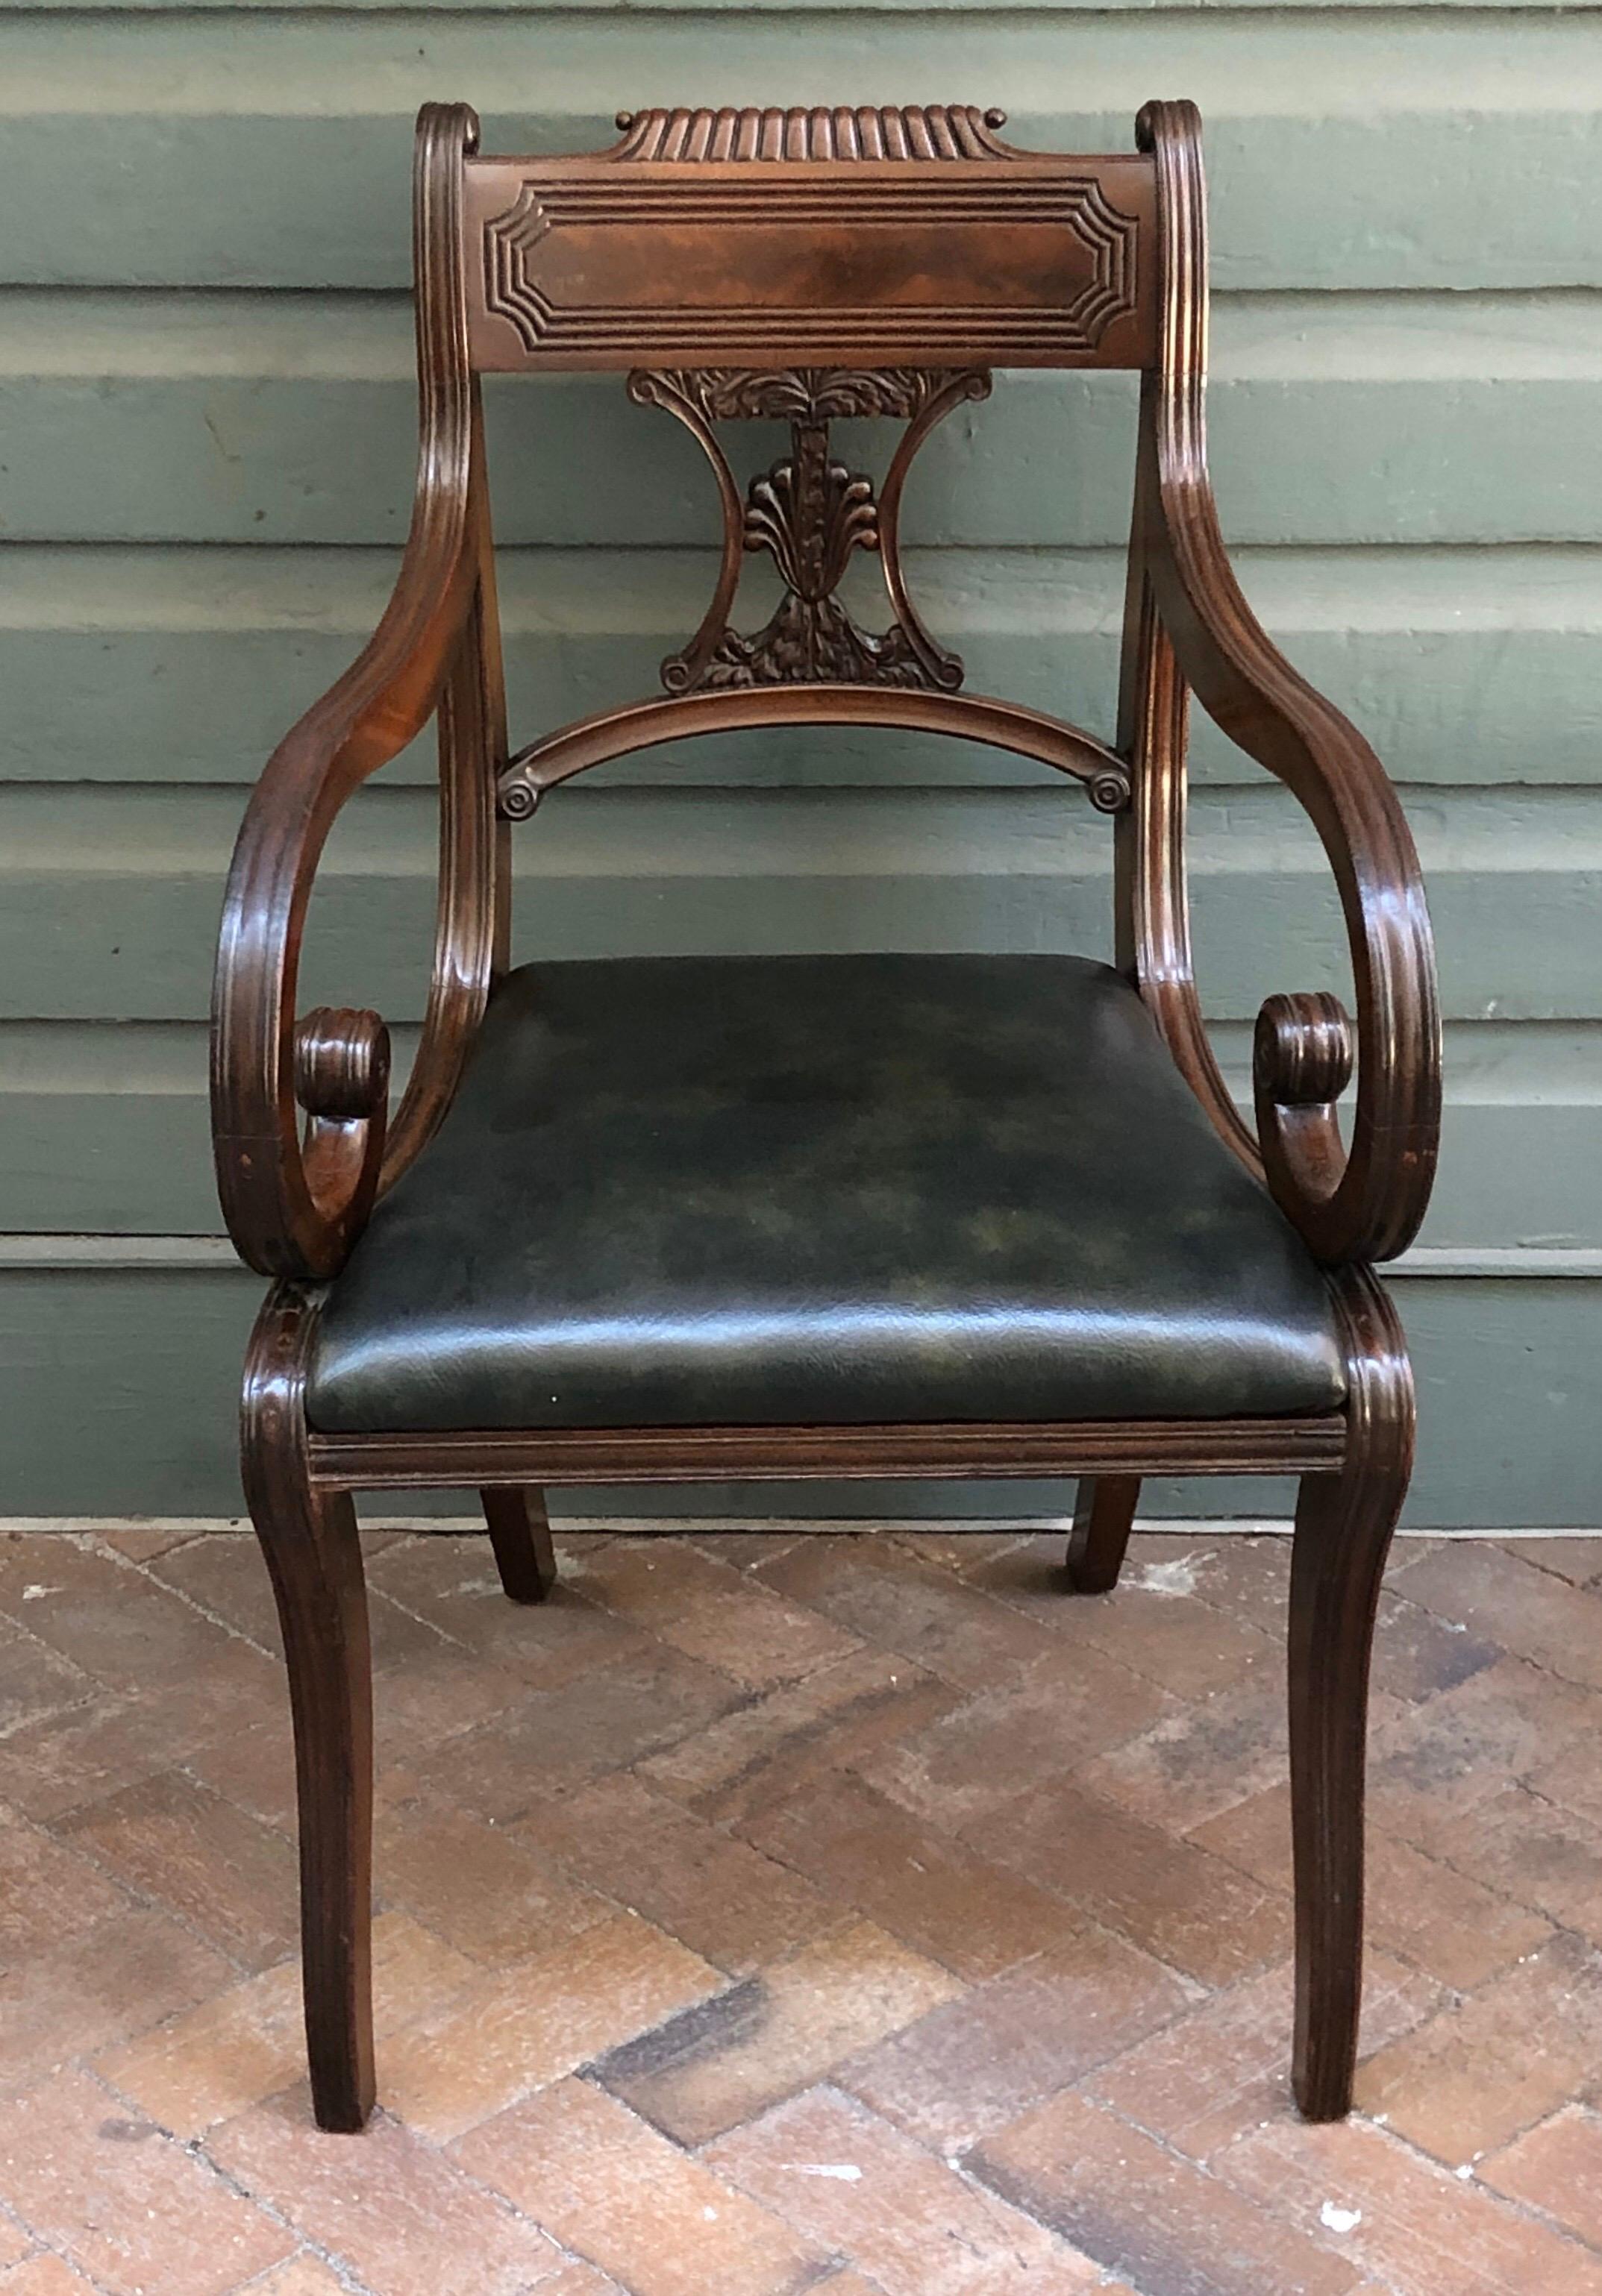 Dieses englische Set aus acht klassischen Regency-Sesseln mit Säbelbeinen ist aus massivem kubanischem Mahagoni gefertigt, die Rückenlehnen sind ungewöhnlich geschnitzt mit einem Palmetto-Baumholzsplat. Die außergewöhnlich geschwungenen Stühle haben